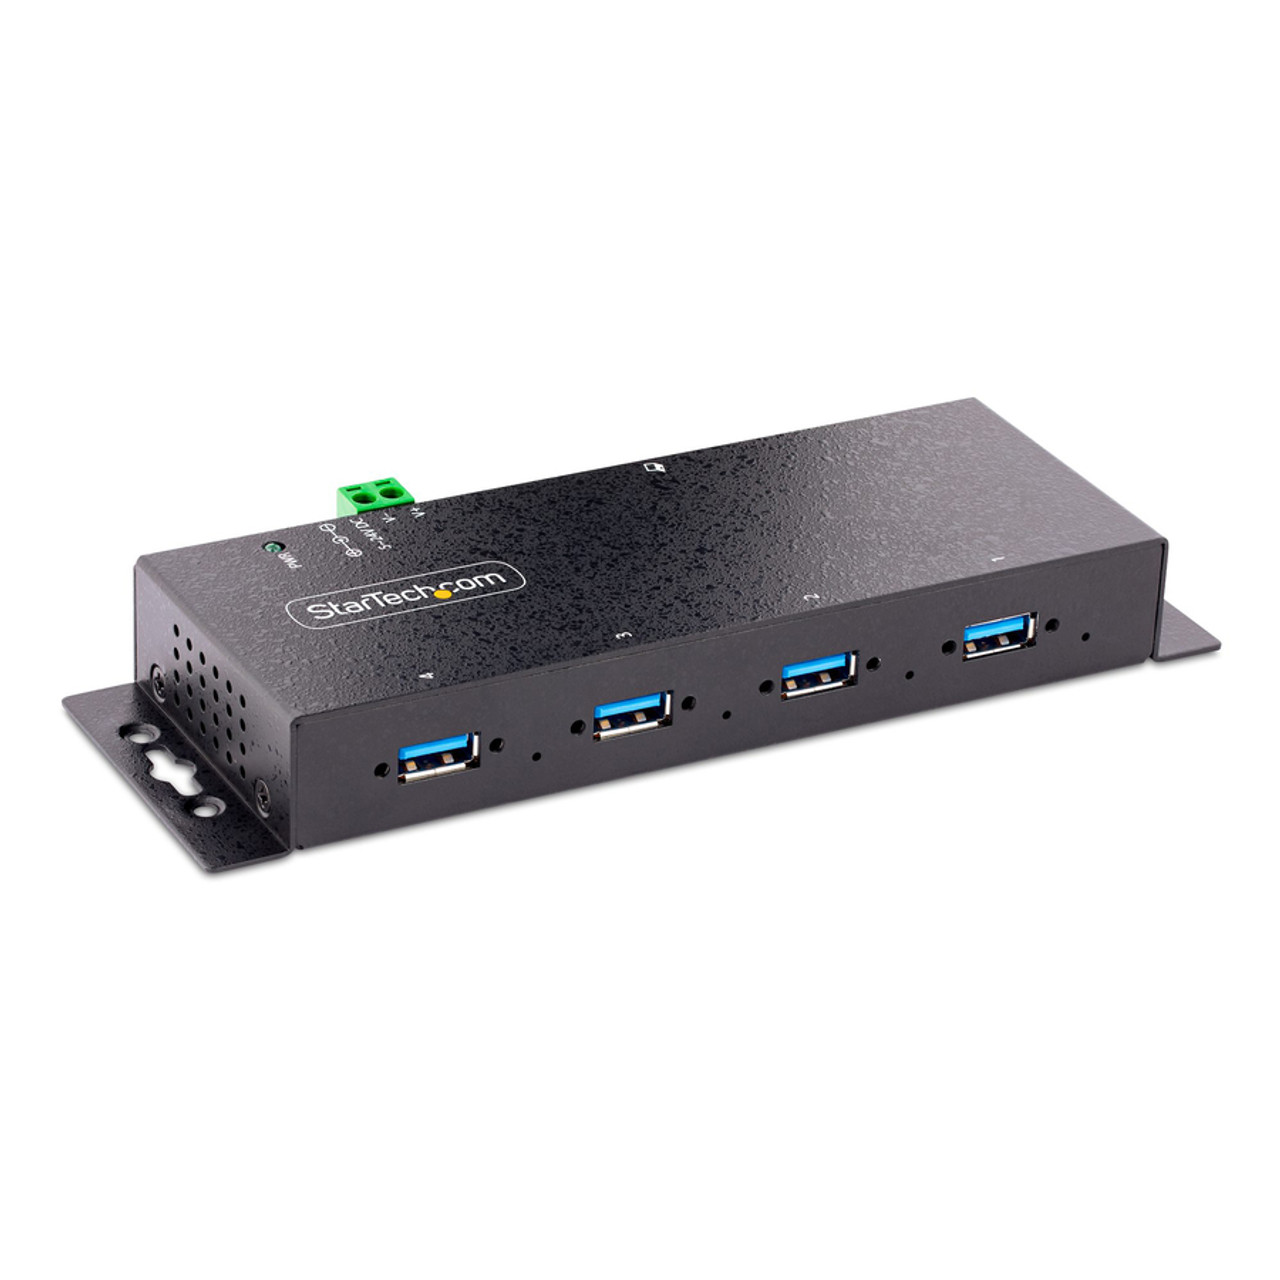 StarTech.com Hub USB 3.0 à 4 ports avec câble intégré - 5Gbps